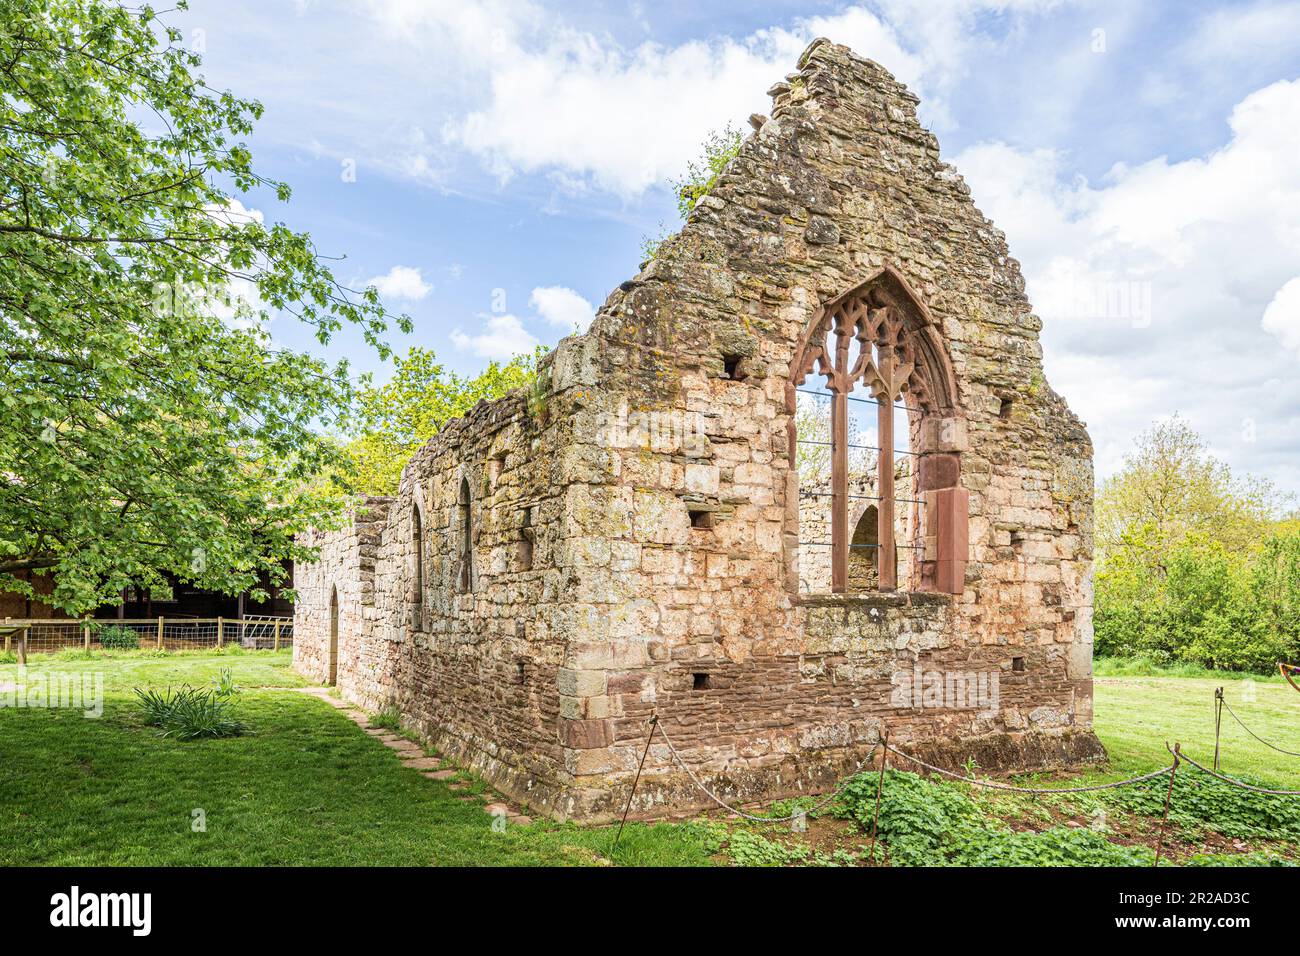 Les ruines de la chapelle normande du 12th siècle à côté de Lower Brockhampton Manor House près de Bromyard, Herefordshire, Angleterre Royaume-Uni Banque D'Images